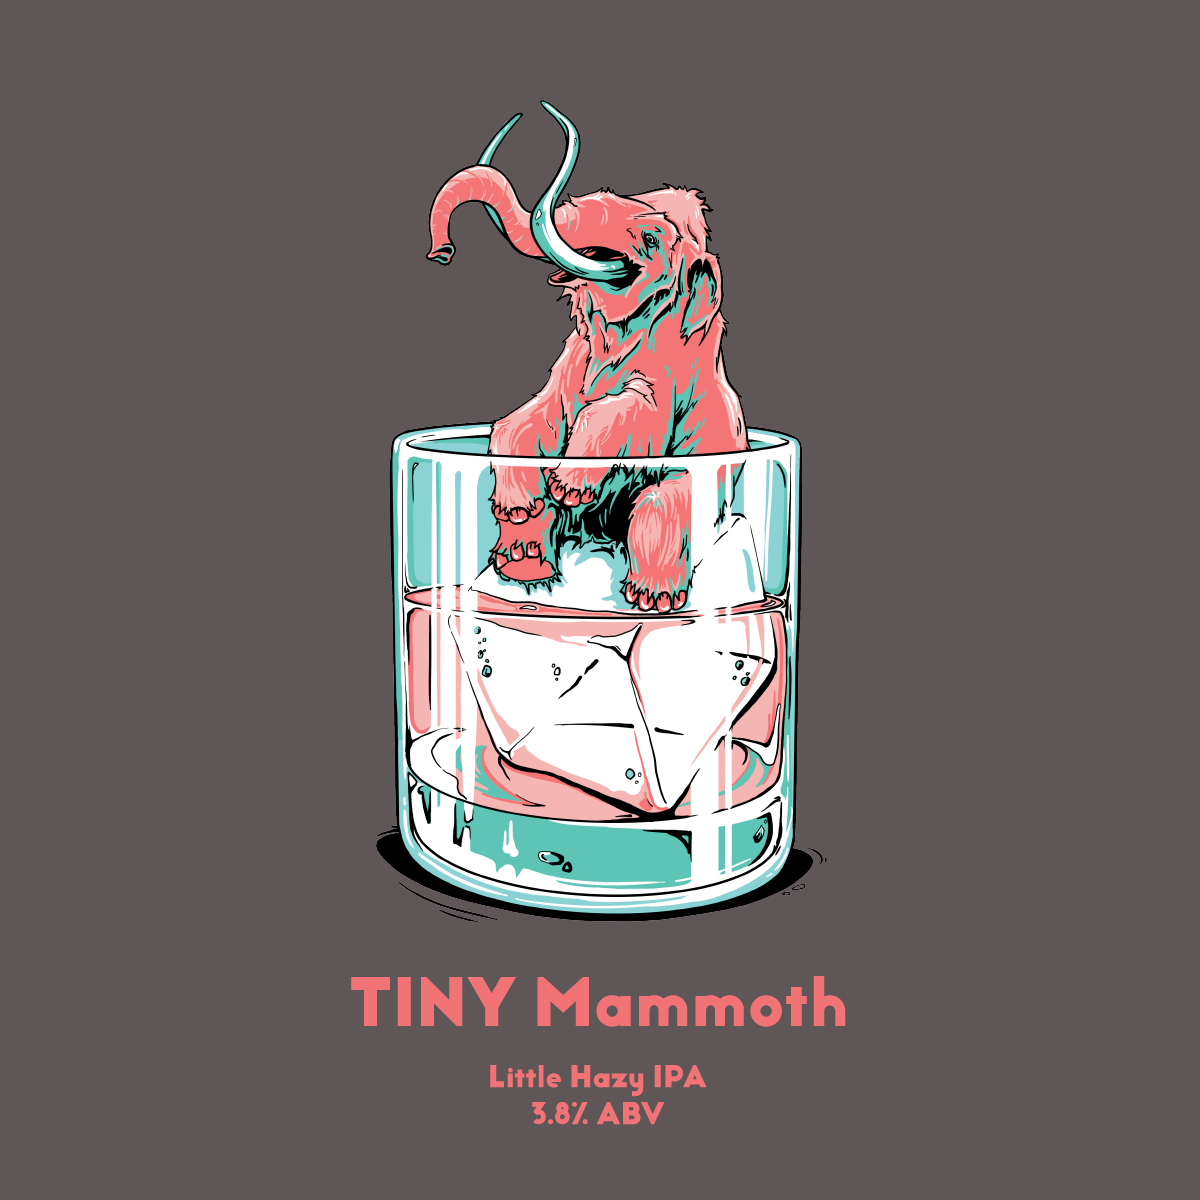 Tiny Mammoth